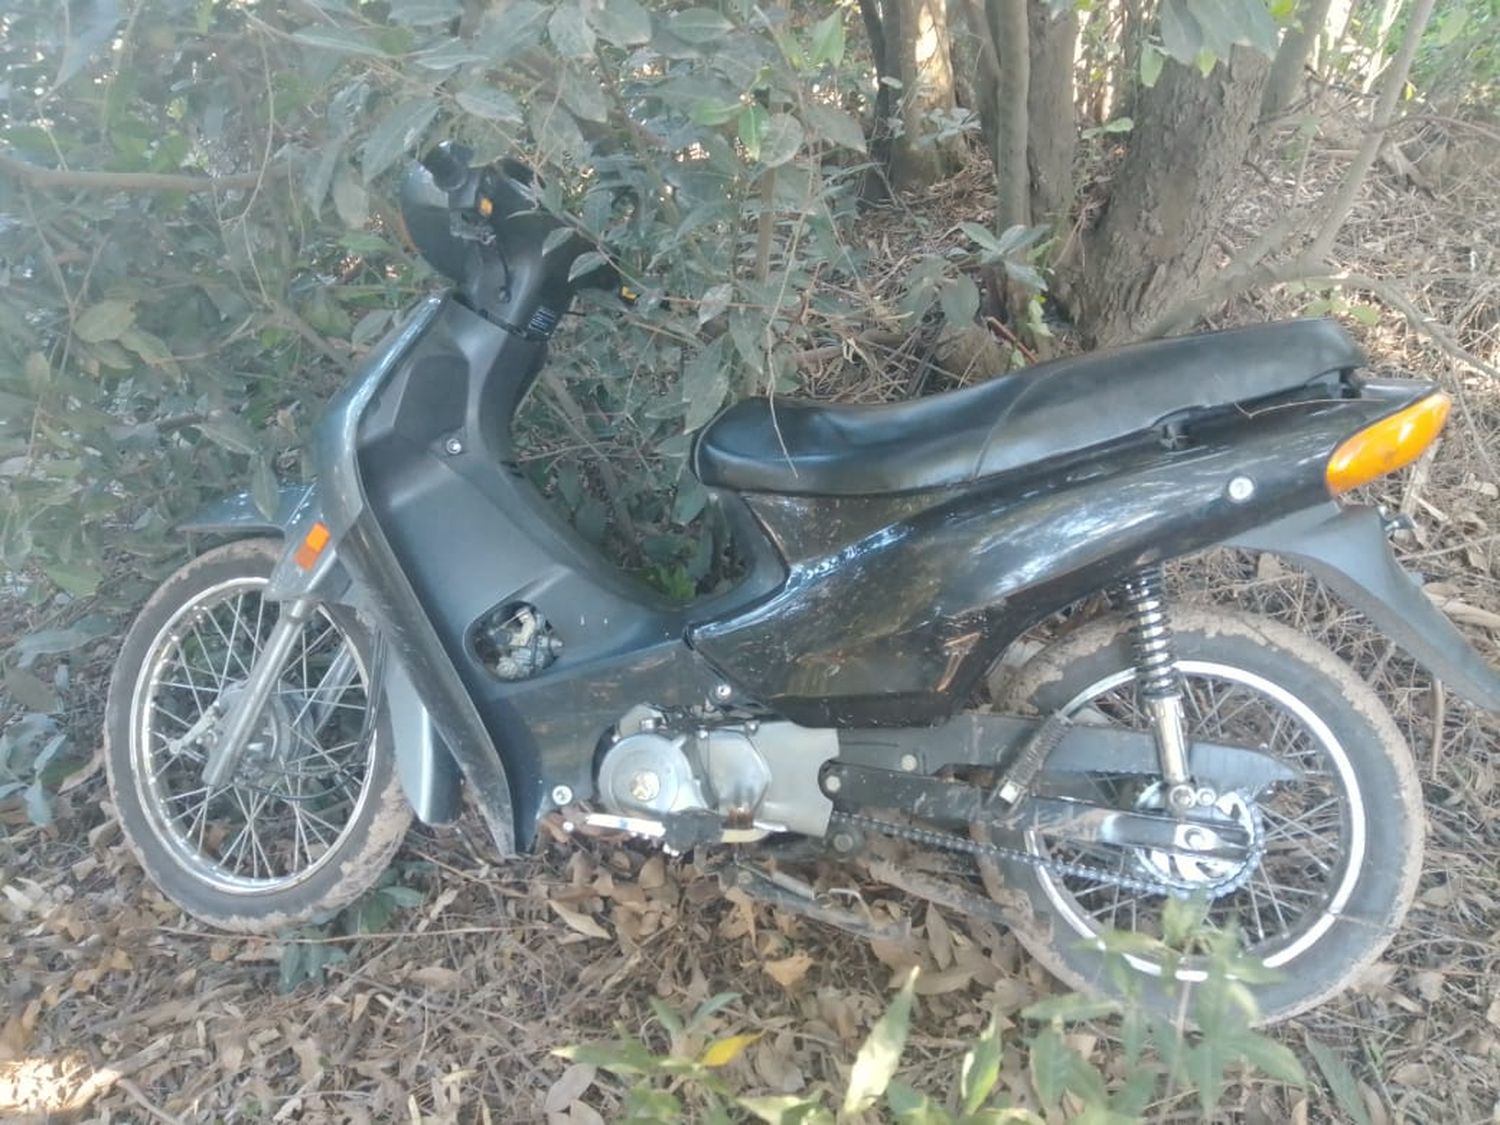 ¿Ladrones arrepentidos?: Robaron una moto a la madrugada pero luego la dejaron abandonada en un baldío